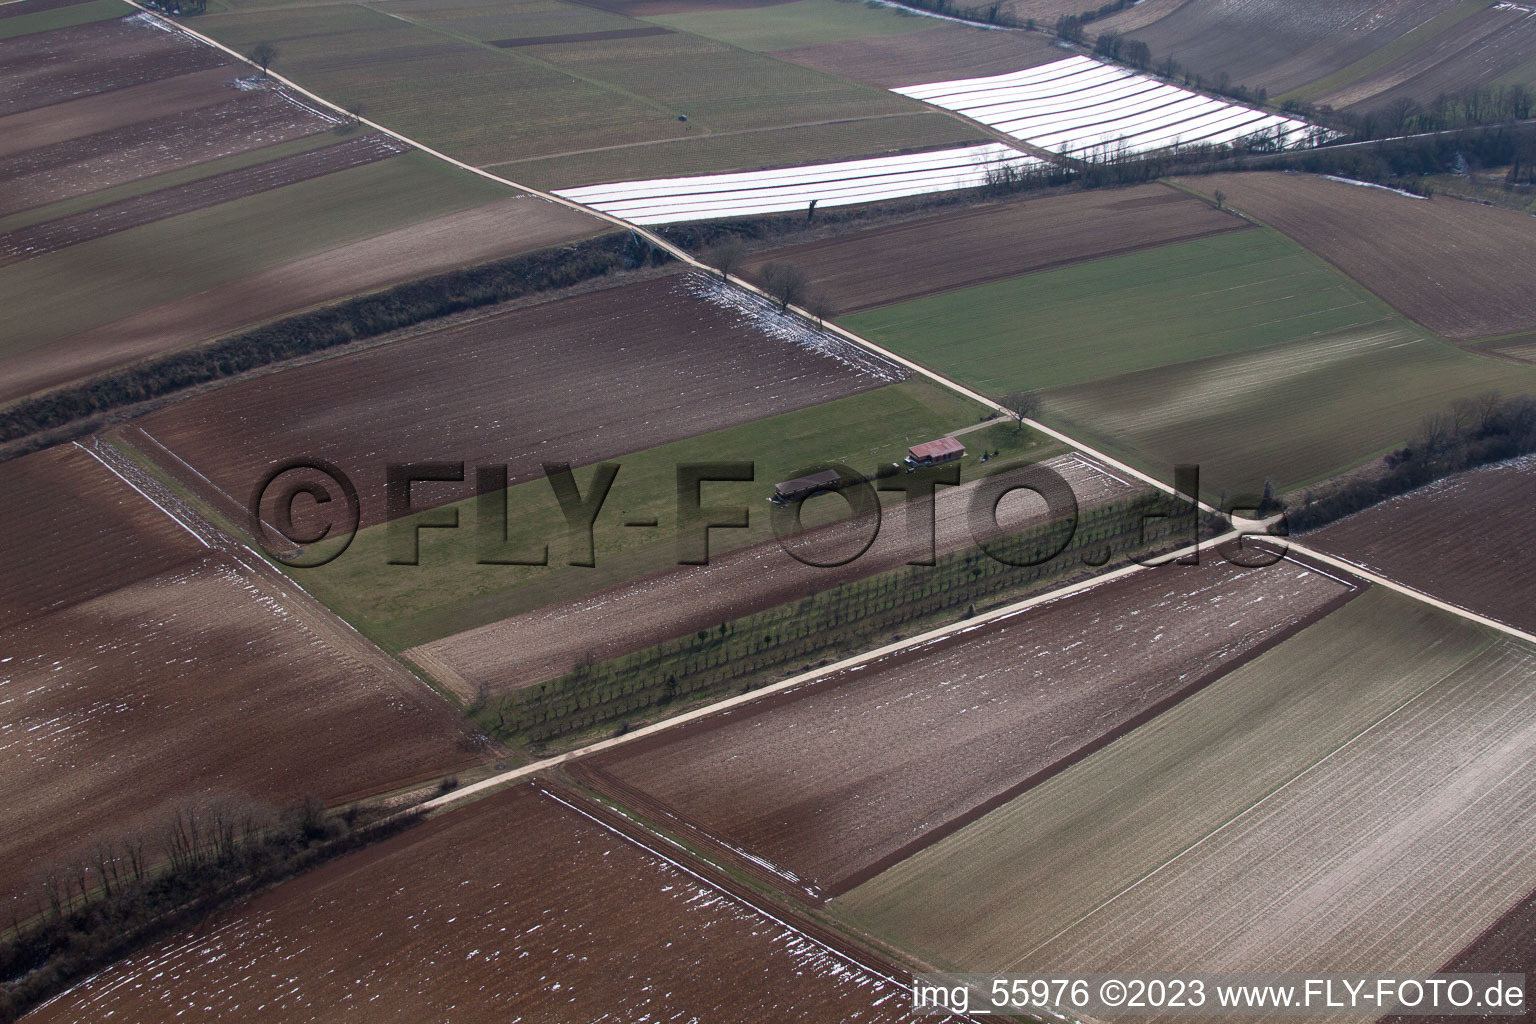 Aérodrome modèle à Freckenfeld dans le département Rhénanie-Palatinat, Allemagne vue du ciel